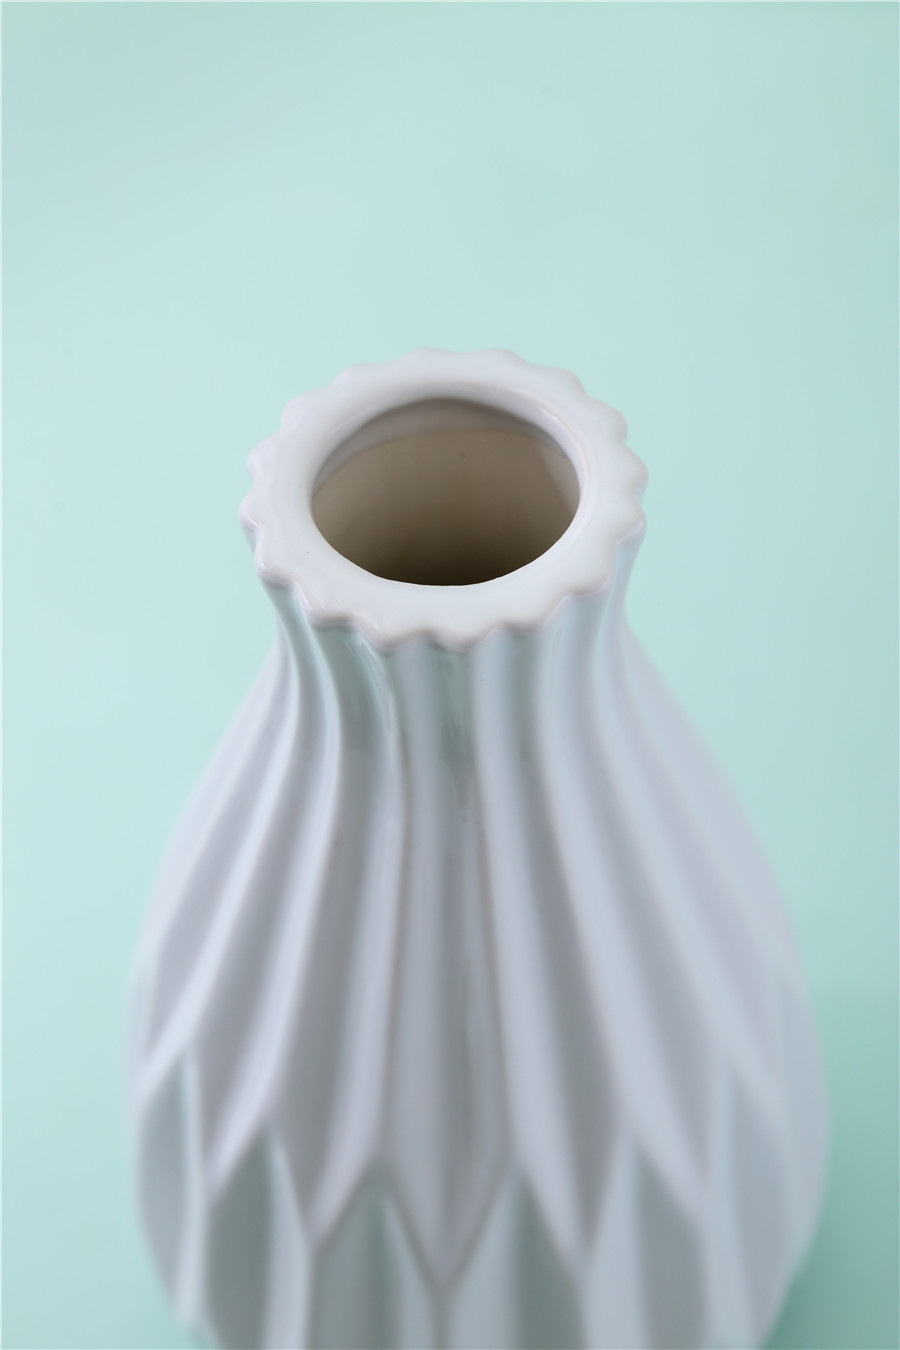 White Vase (5)eez